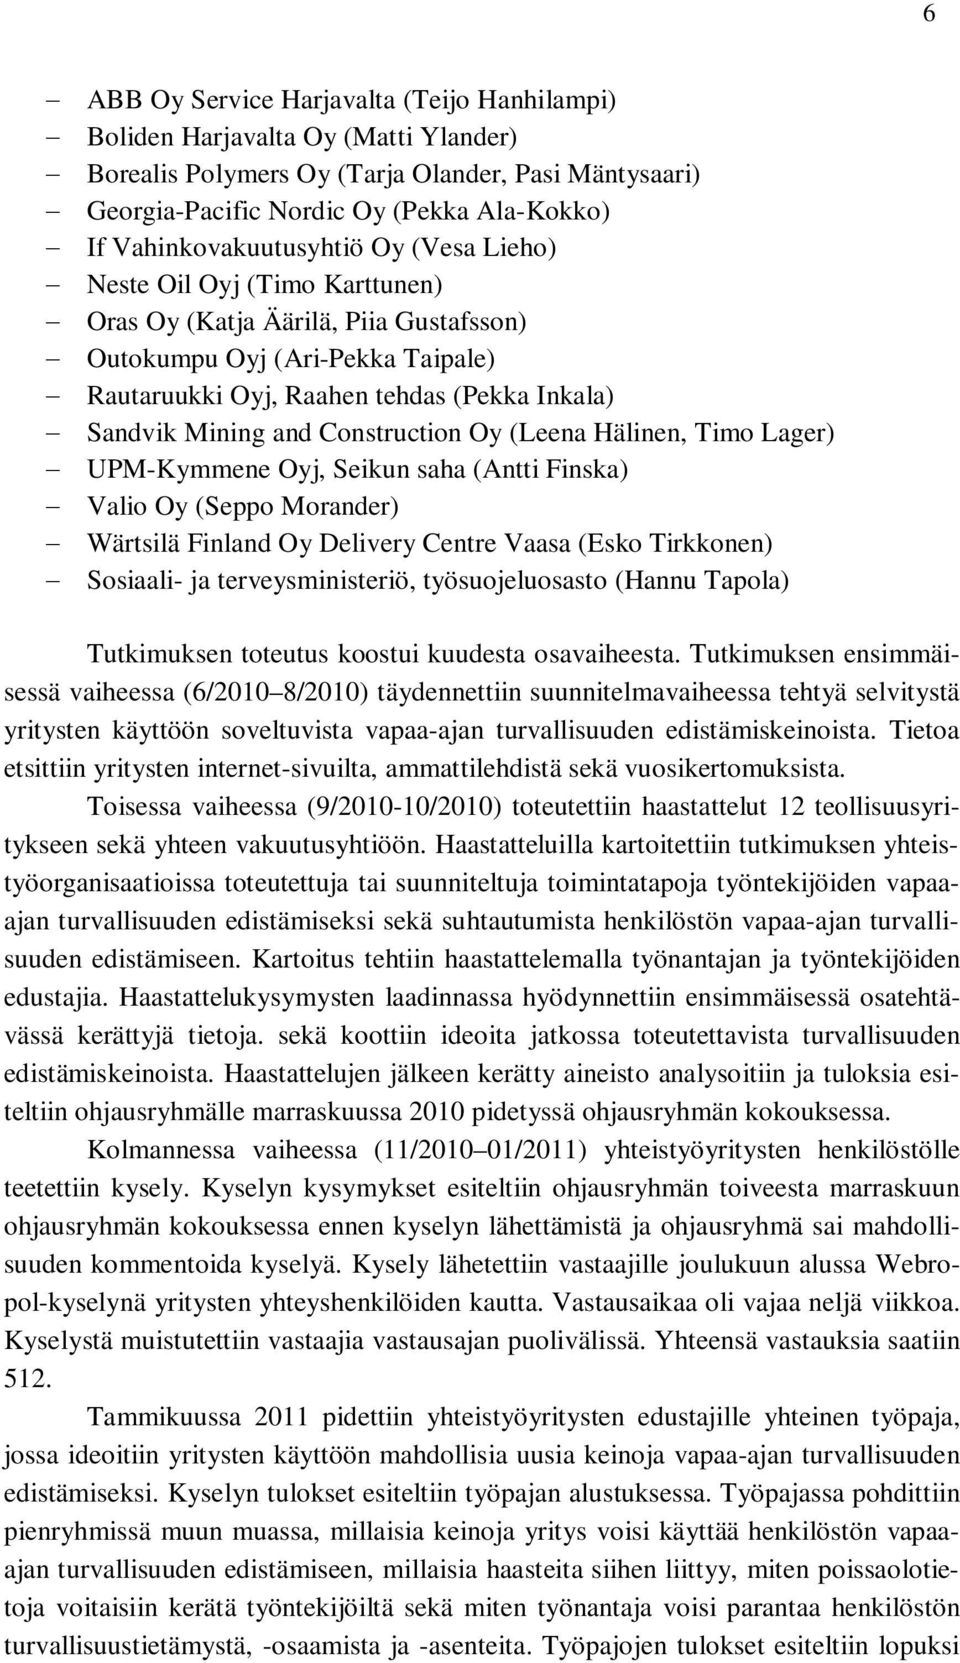 Mining and Construction Oy (Leena Hälinen, Timo Lager) UPM-Kymmene Oyj, Seikun saha (Antti Finska) Valio Oy (Seppo Morander) Wärtsilä Finland Oy Delivery Centre Vaasa (Esko Tirkkonen) Sosiaali- ja